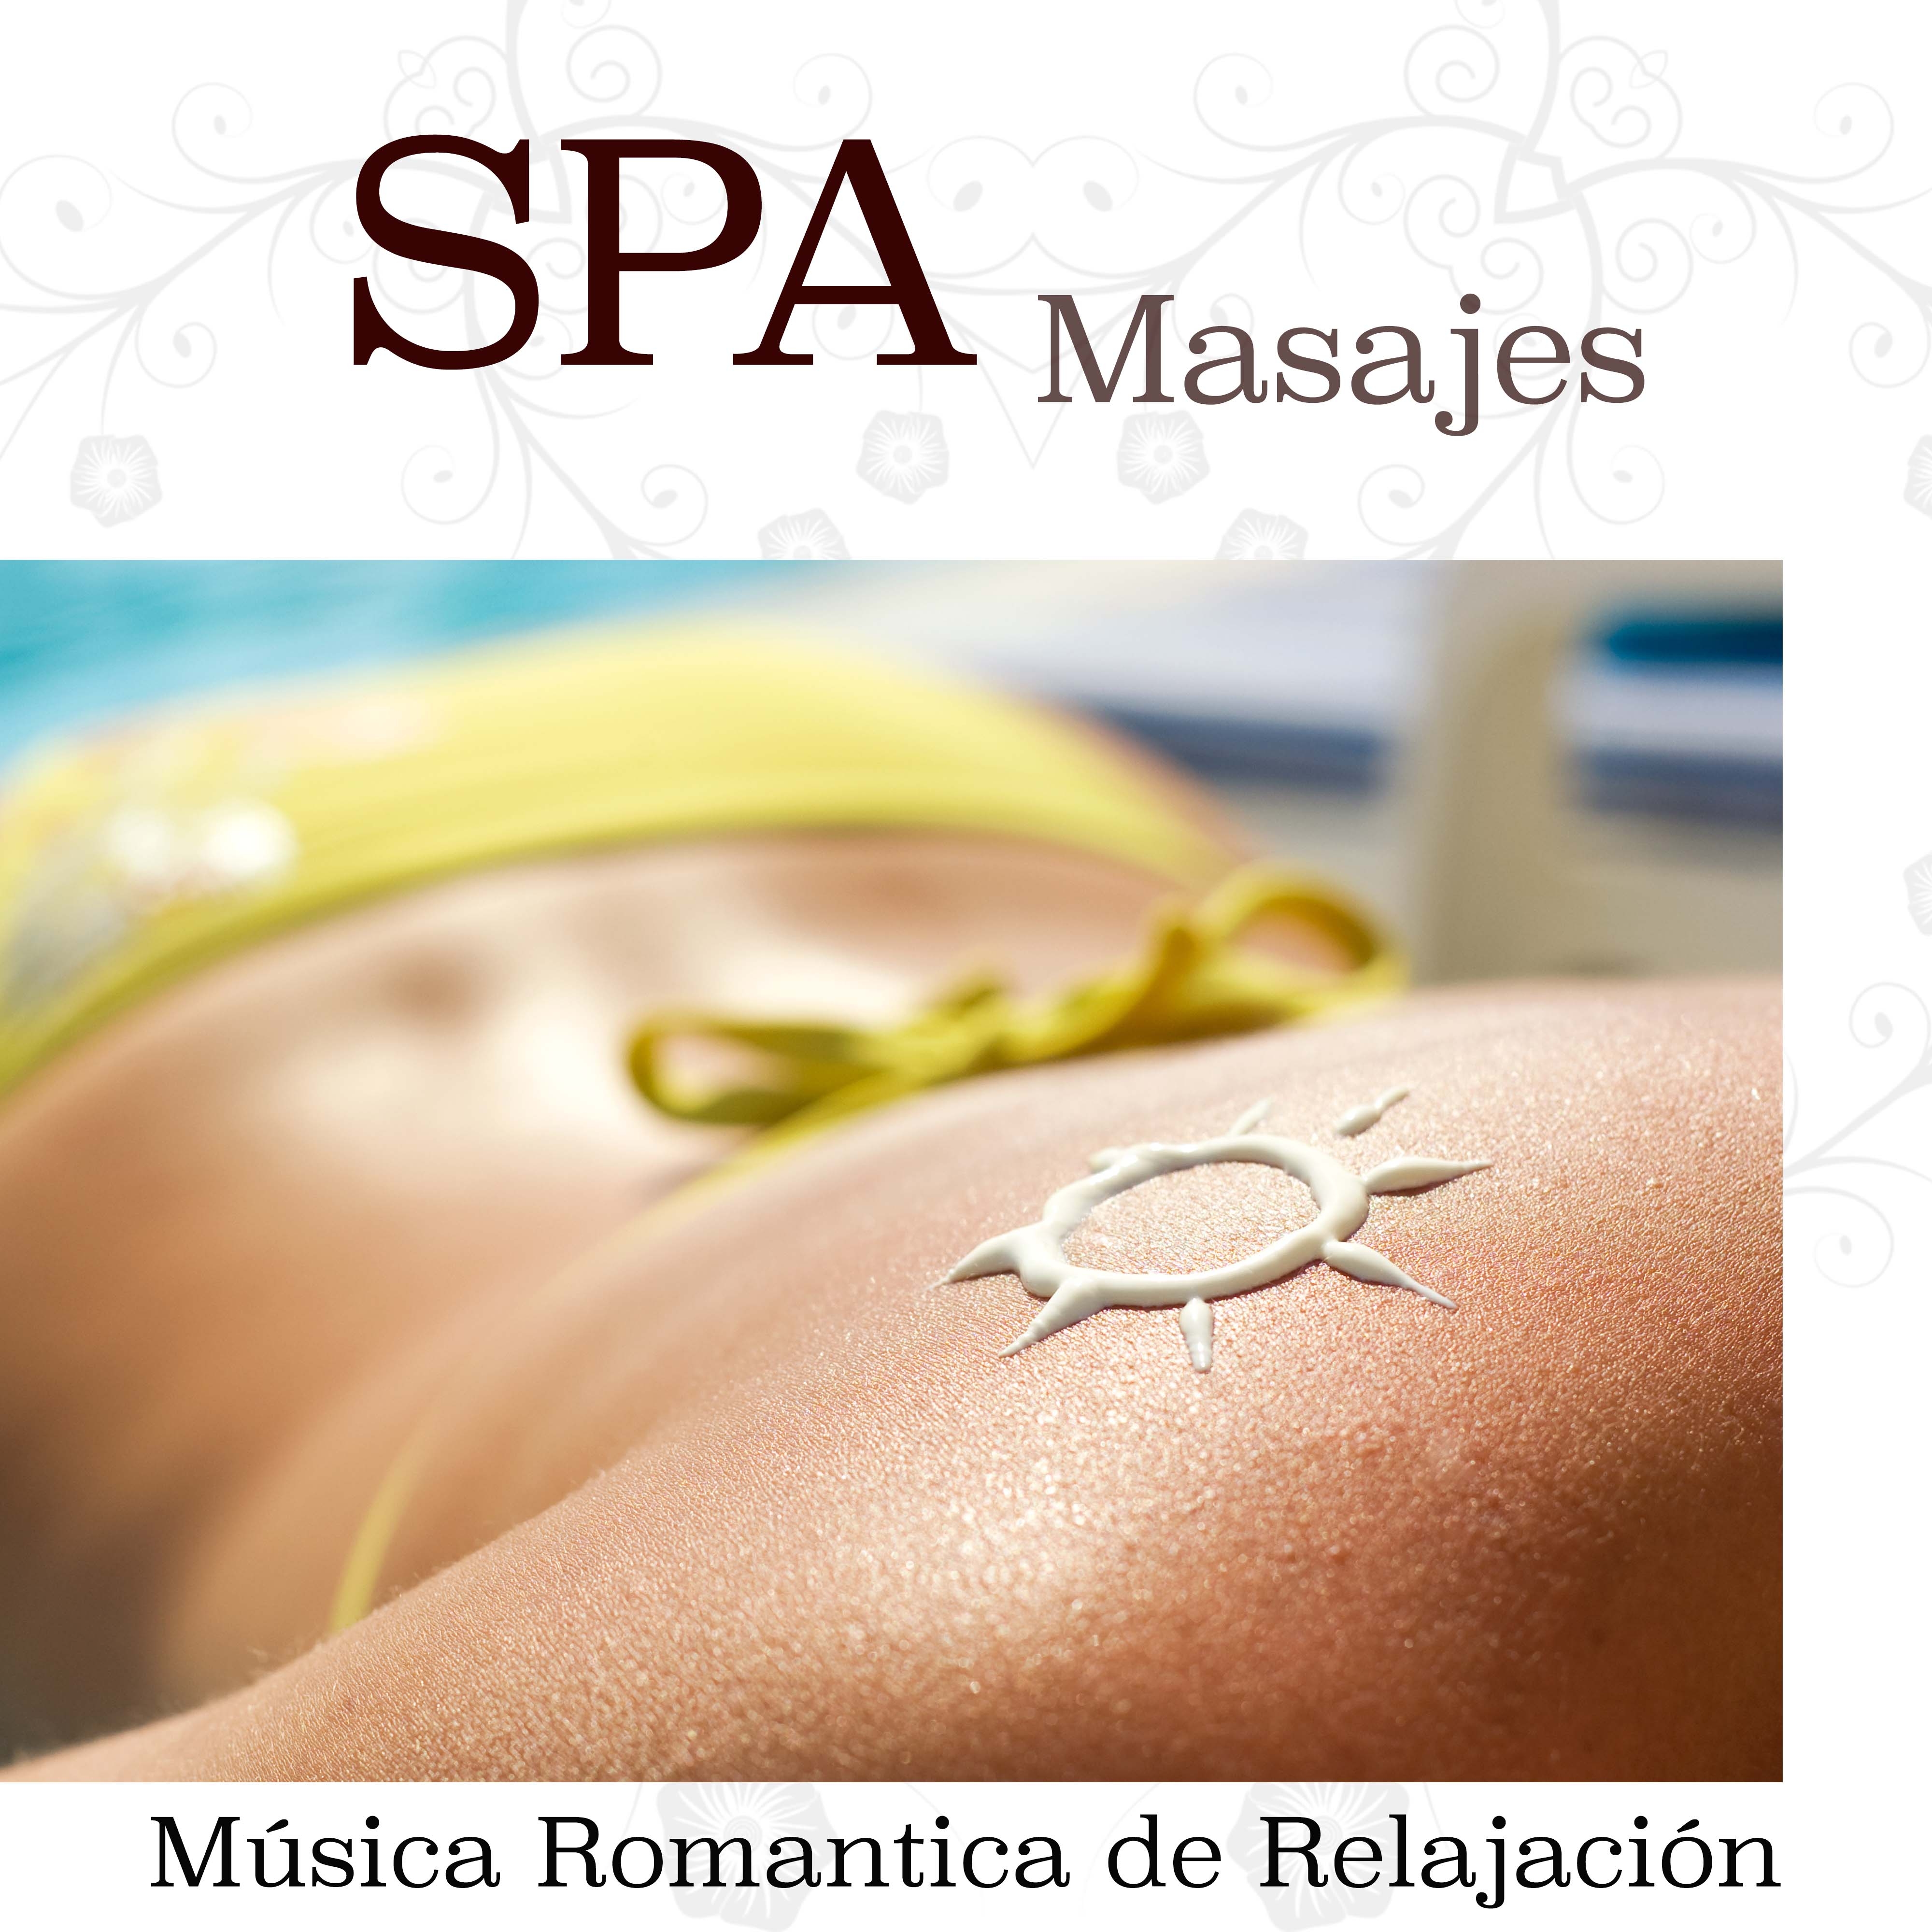 Spa Masajes - Musica Romantica de Relajacion para Spa, Balnearios, Termas y Masajista